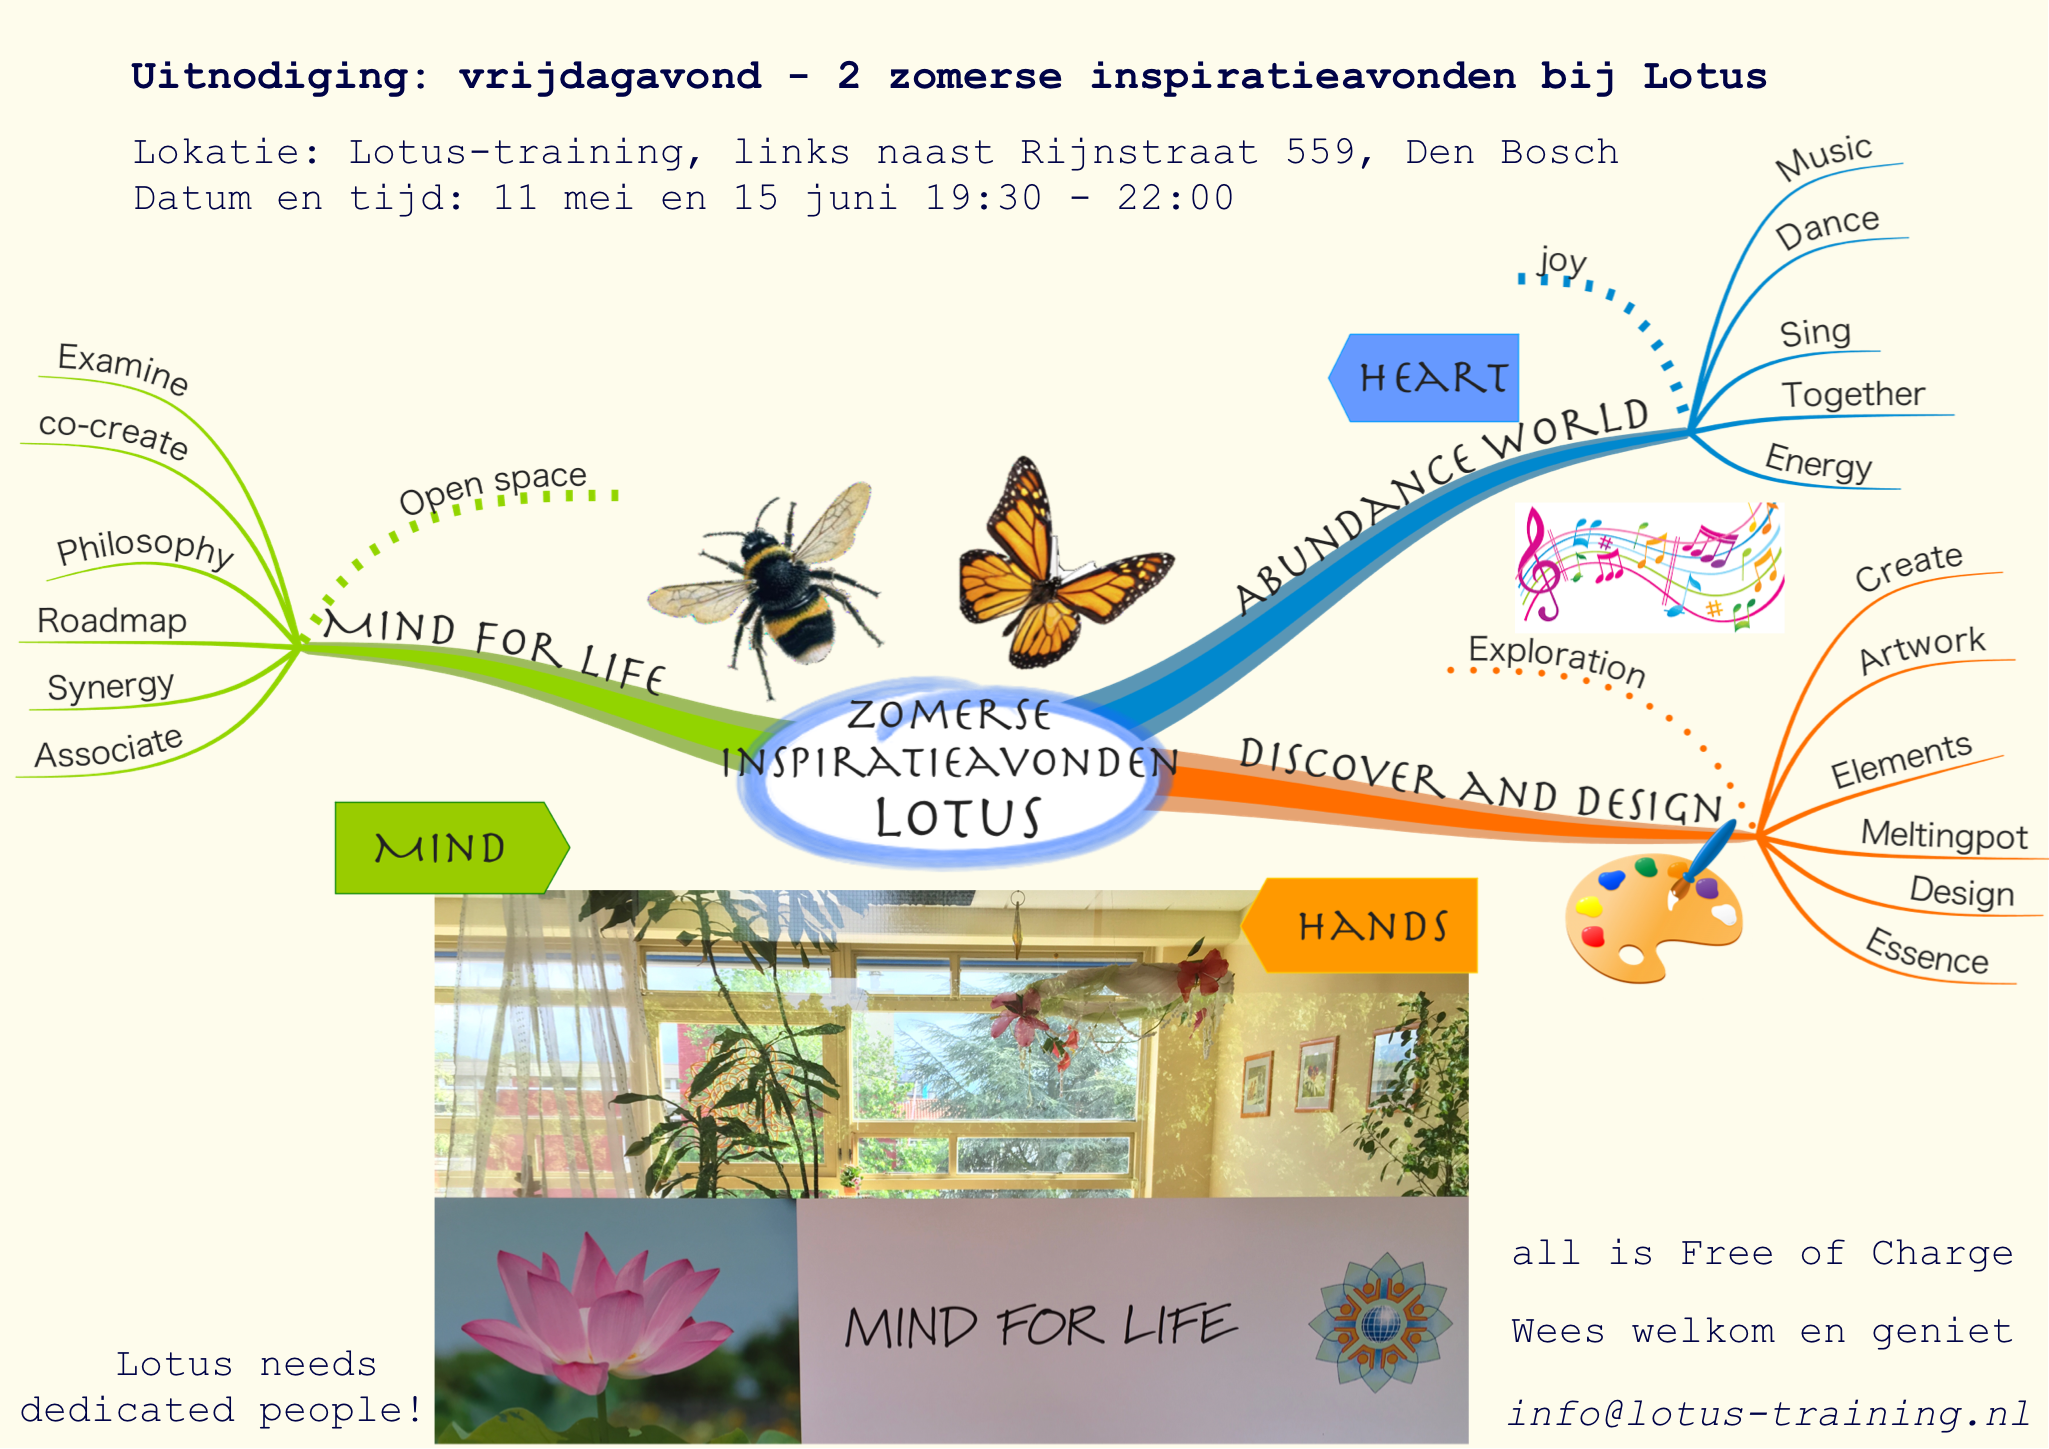 Uitnodiging voor Inspiratieavonden bij Lotus met Mindmap mind for life, abundance world en 'Discover en design'